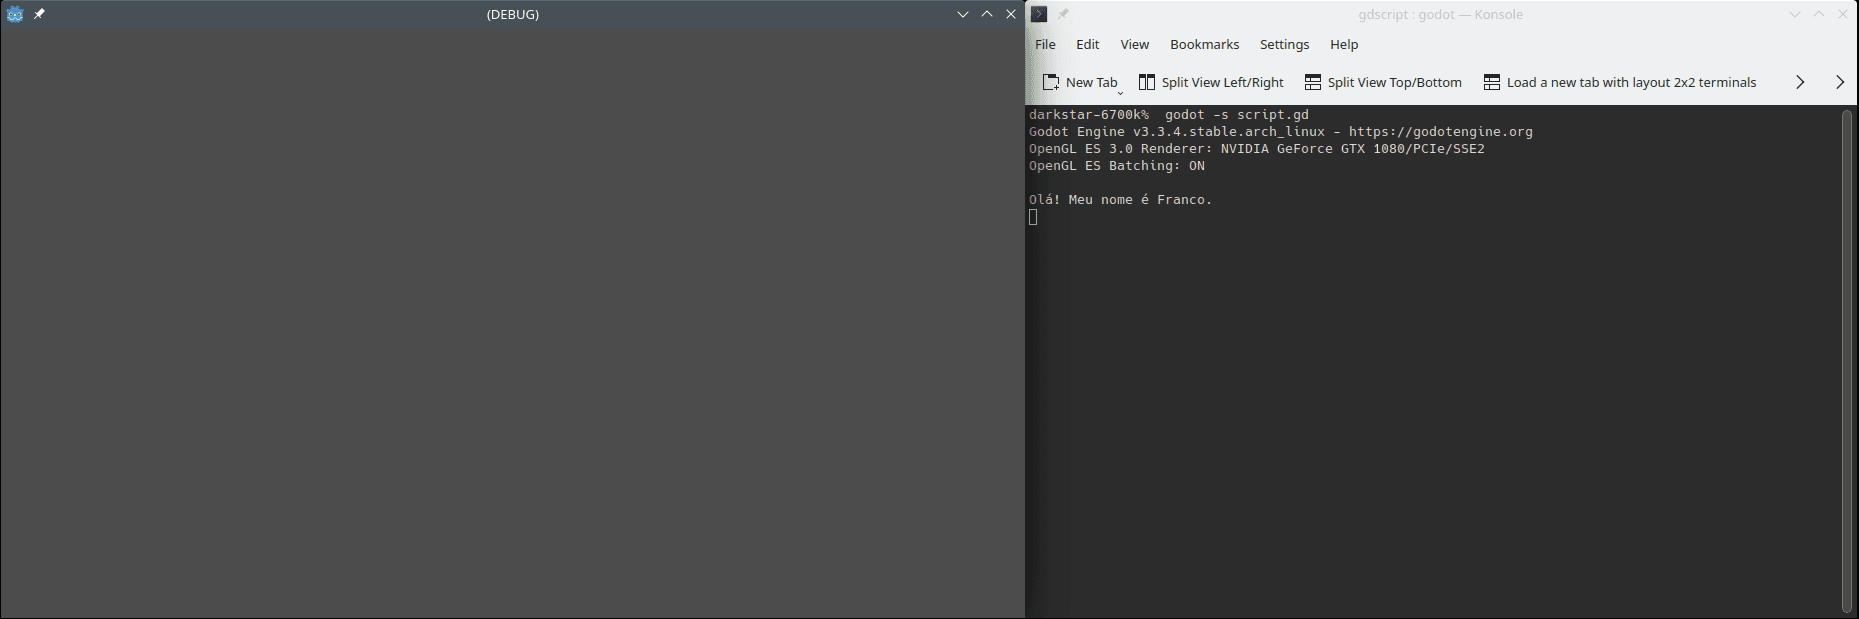 Exemplo de início e uso do interpretador GDScript na linha de comando. Usa-se `godot` para iniciar o interpretador; dentro dele, escreve-se o código desejado. A imagem apresenta exemplos de execução do código desta seção.